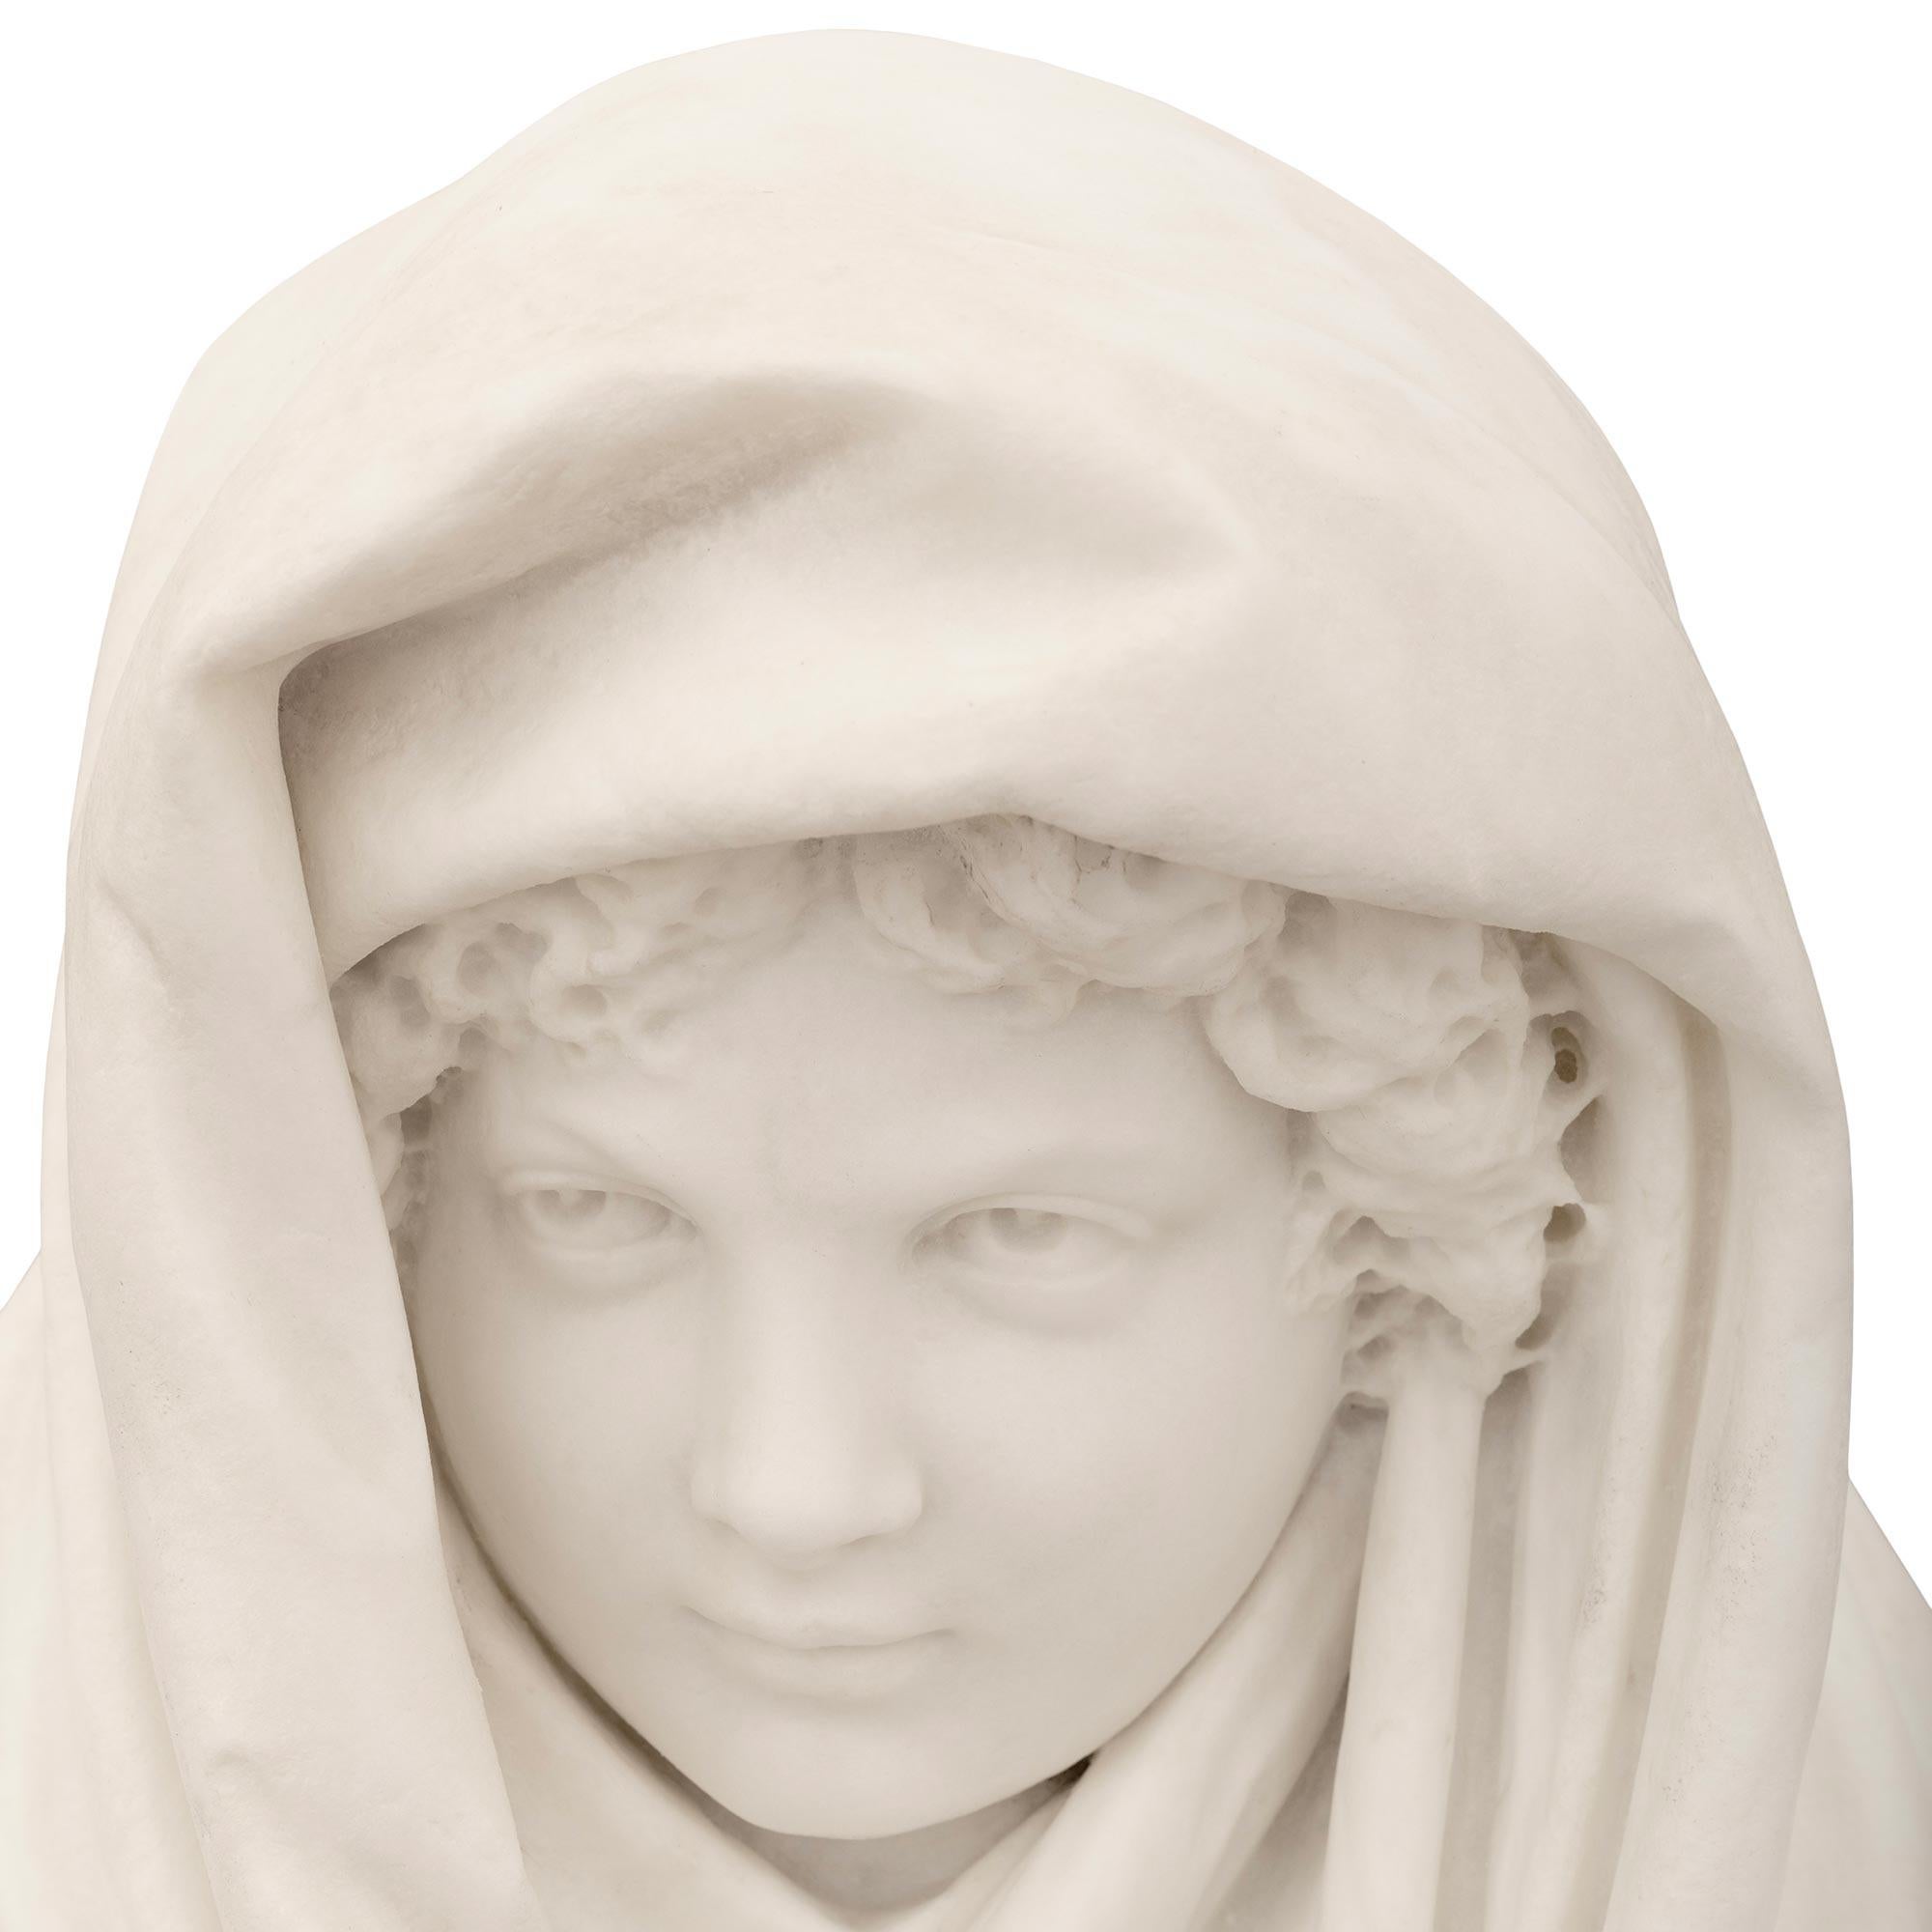 Sculpture en marbre blanc de Carrare du XIXe siècle, finement exécutée et de grande taille, représentant un jeune garçon vêtu d'un châle. Le garçon est drapé dans un châle fluide et surdimensionné qui s'enroule autour de ses épaules et sur sa tête.